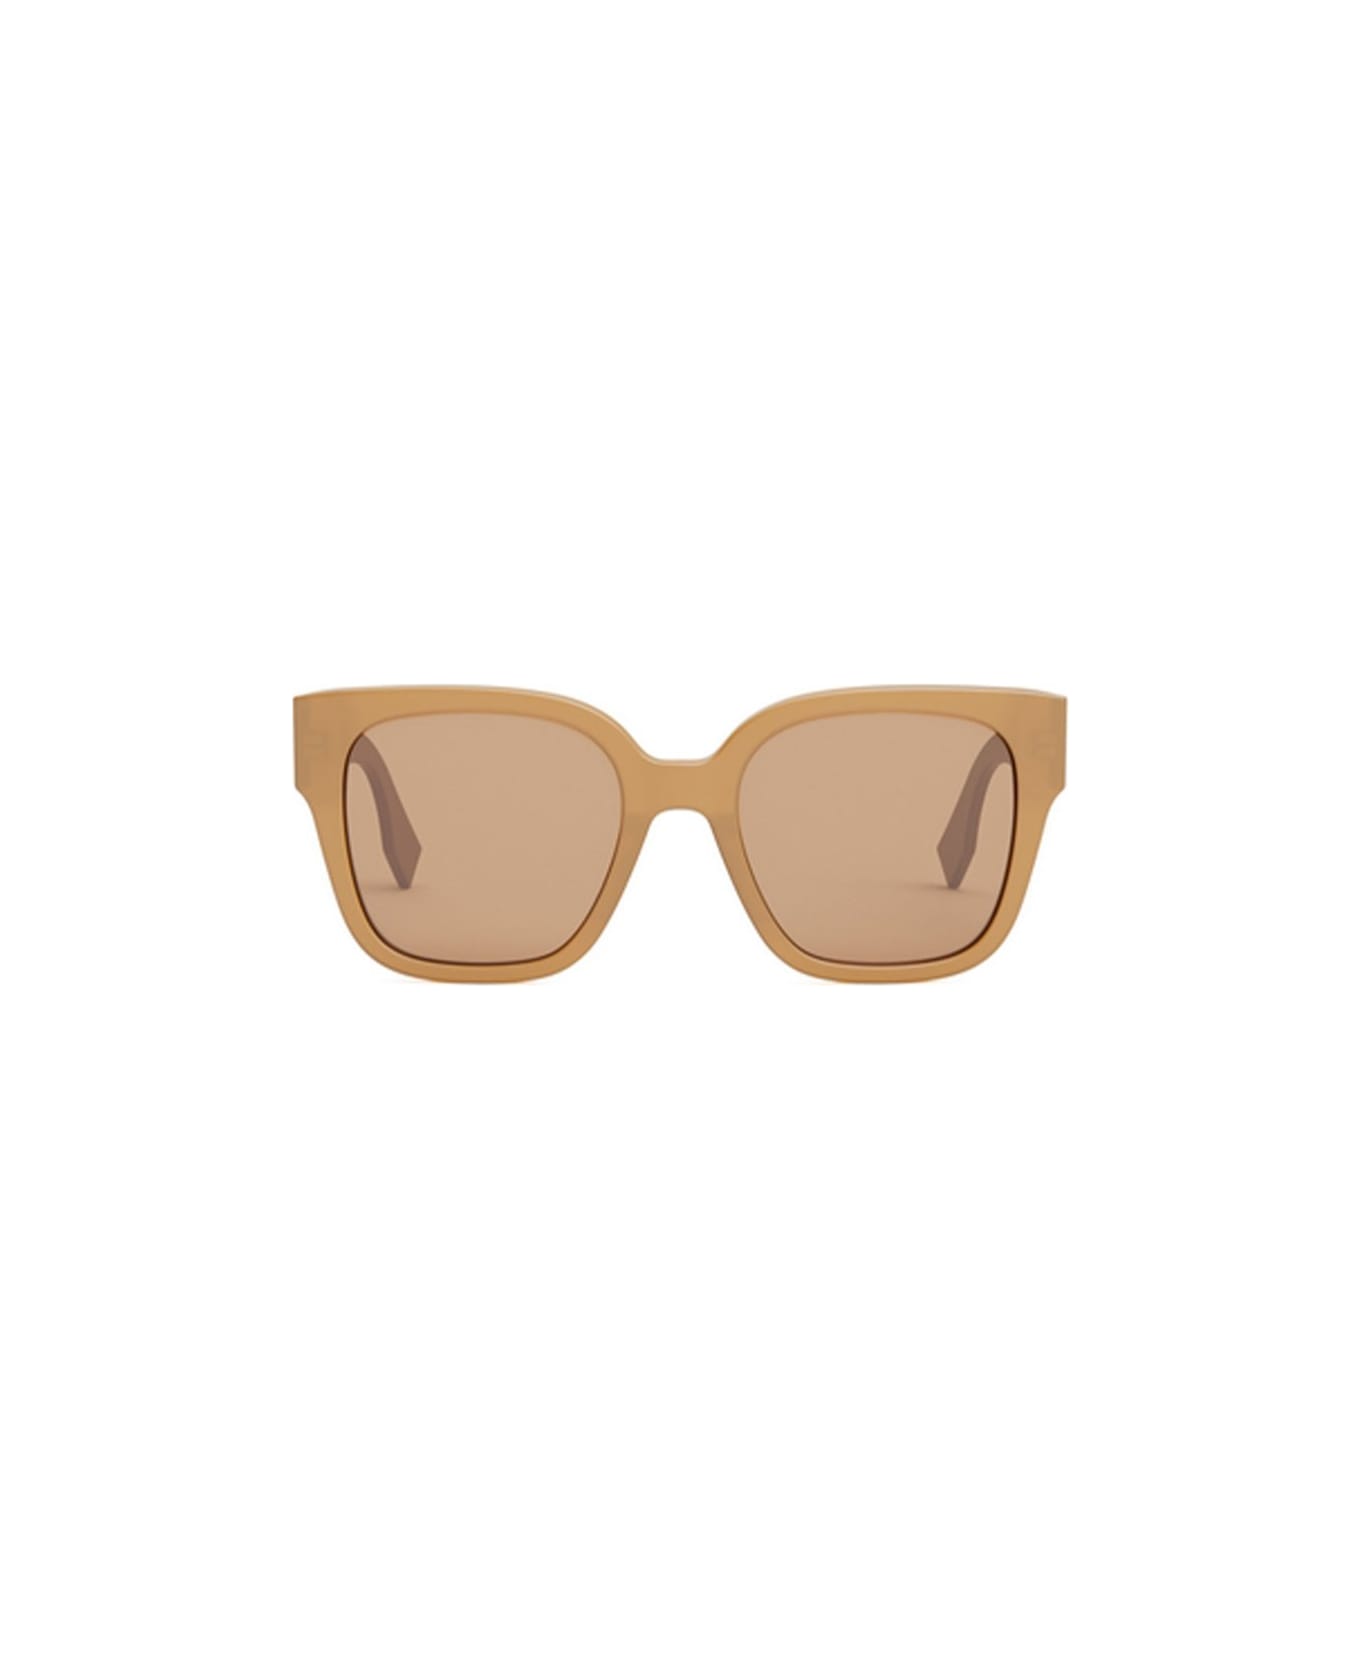 Fendi Eyewear Sunglasses - Cammello/Marrone